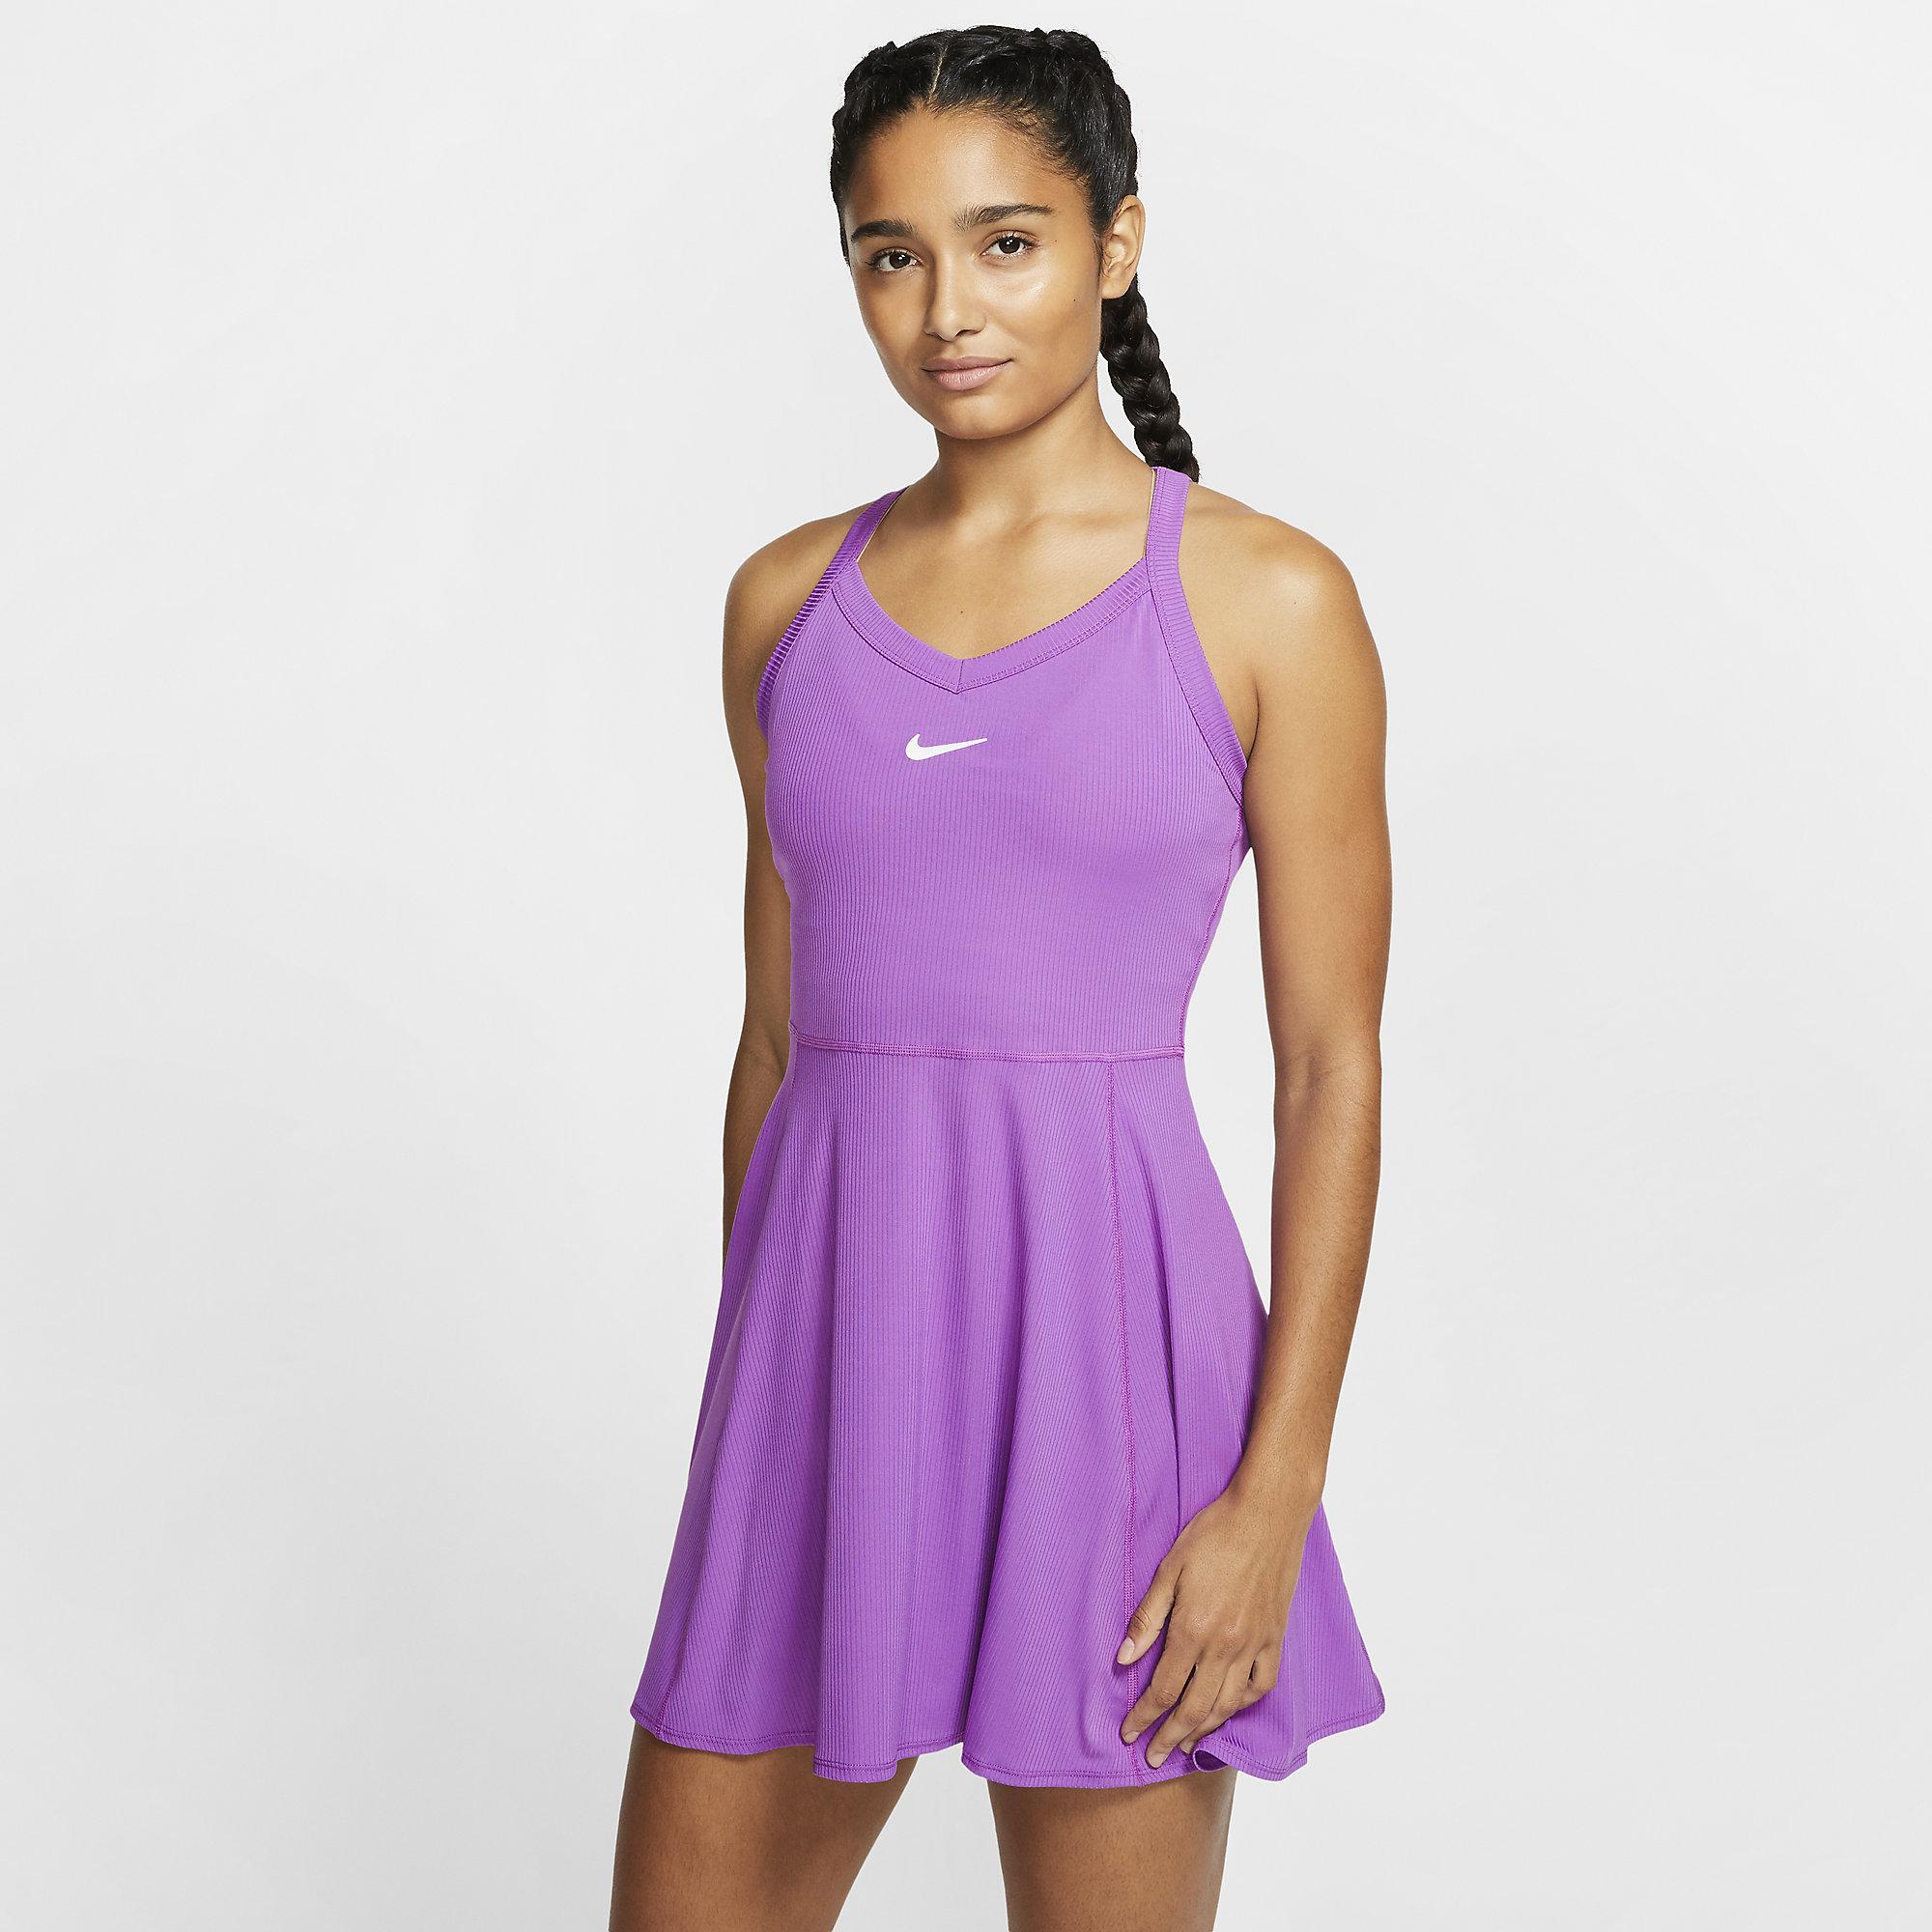 Shopping \u003e nike purple dress, Up to 64% OFF